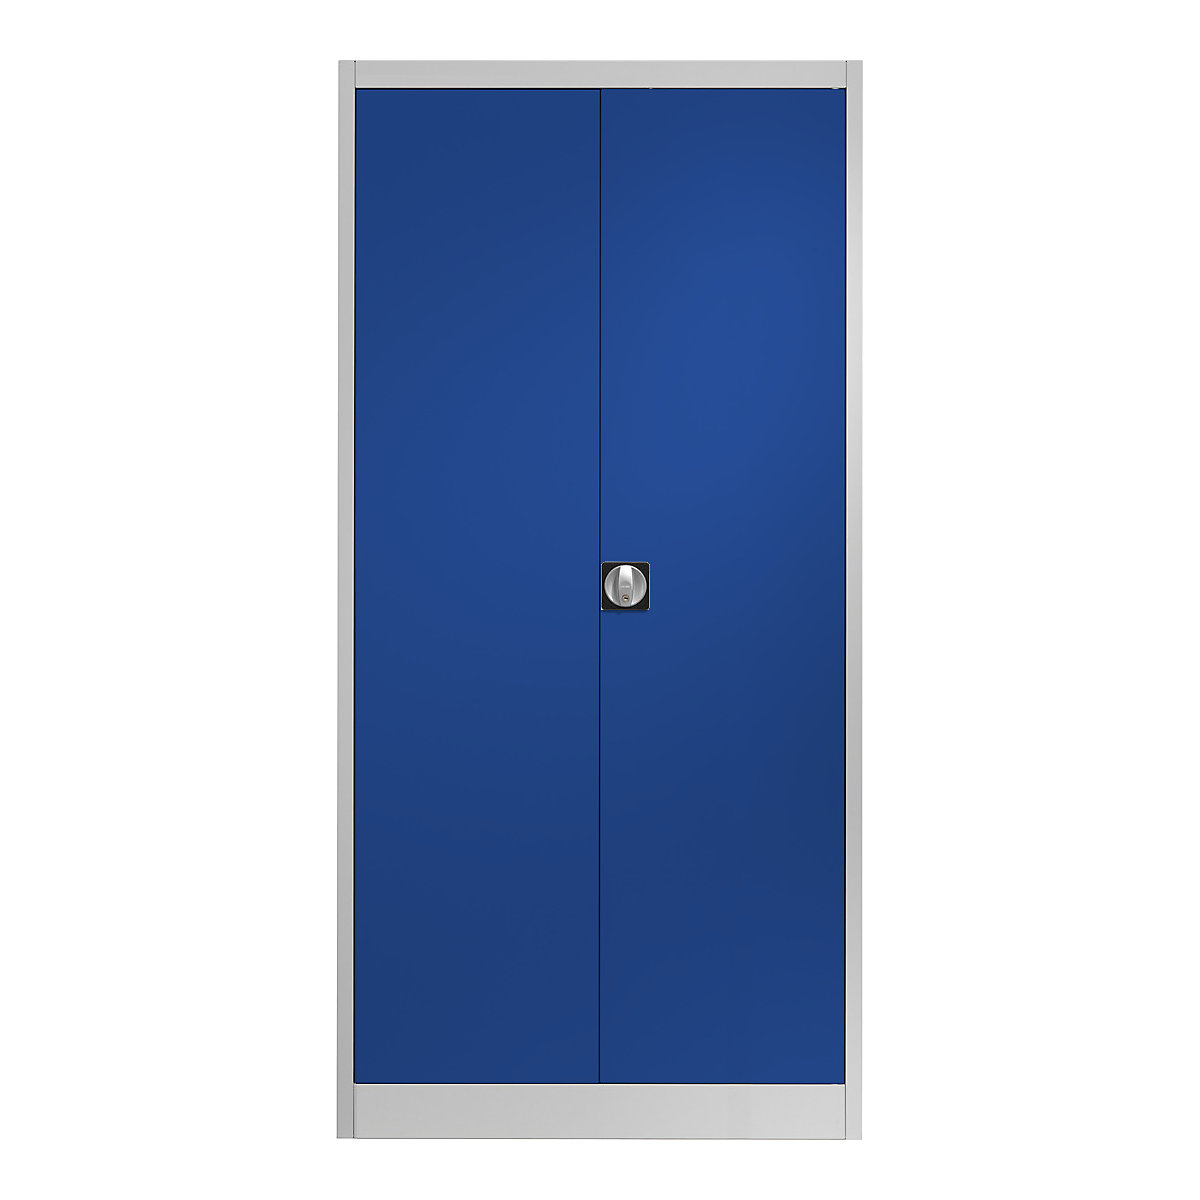 Jeklena omara s krilnimi vrati – mauser, 4 police, G 420 mm, svetlo siva / ultramarin modra-6